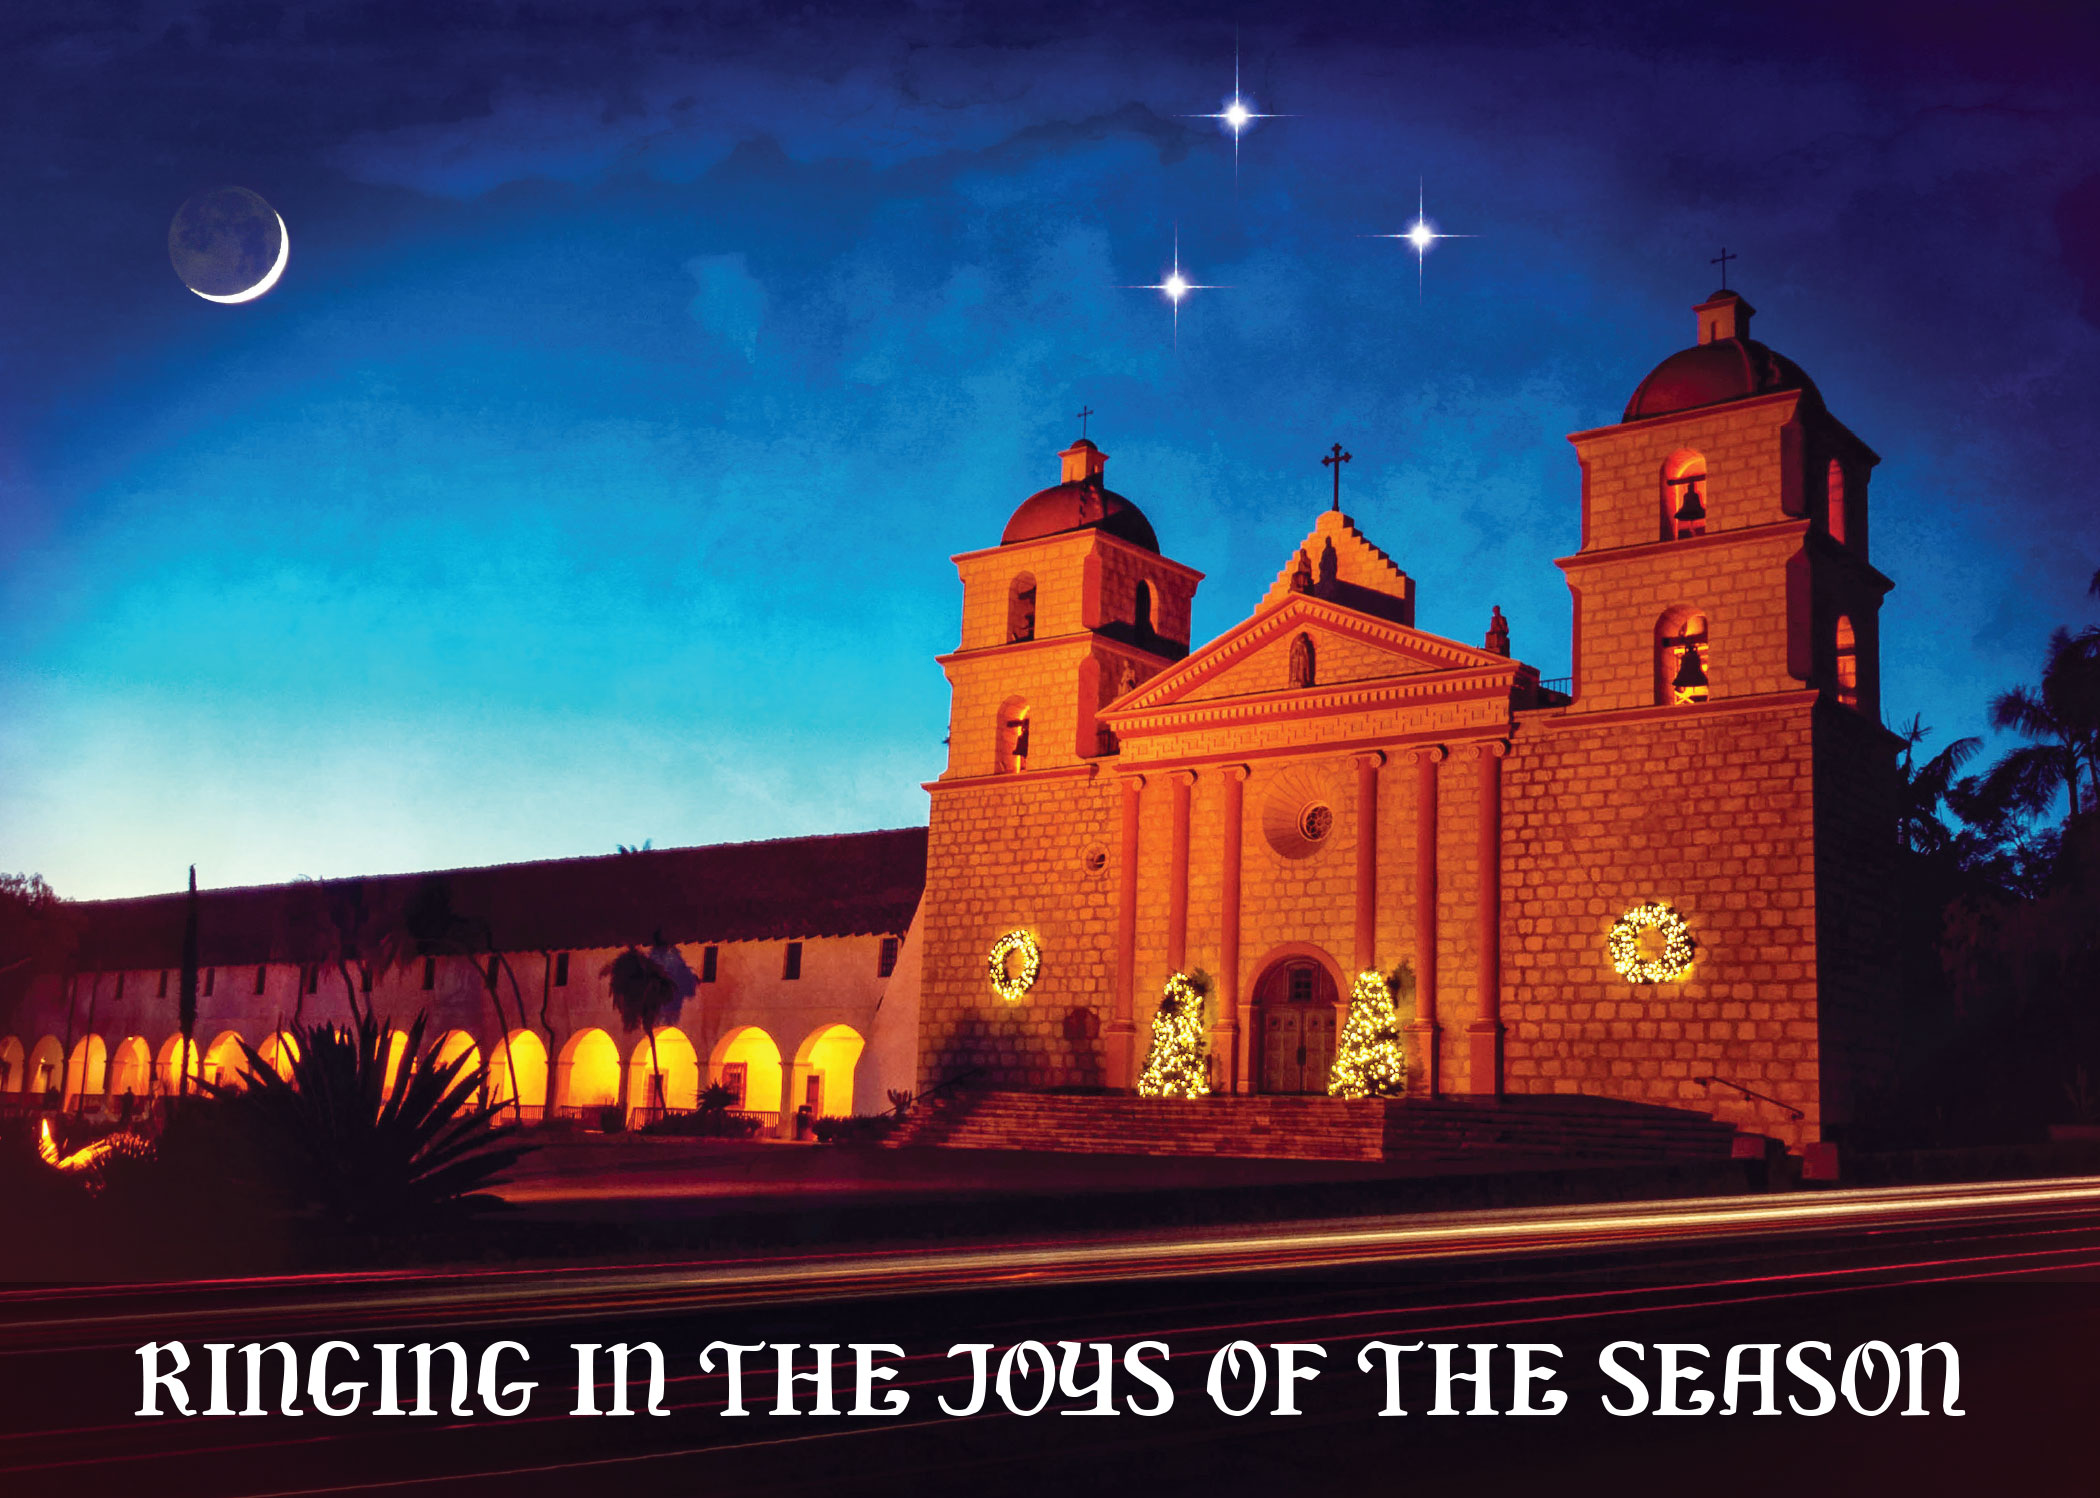 Santa Barbara Mission at Christmas by Santa Barbara Greeting Cards